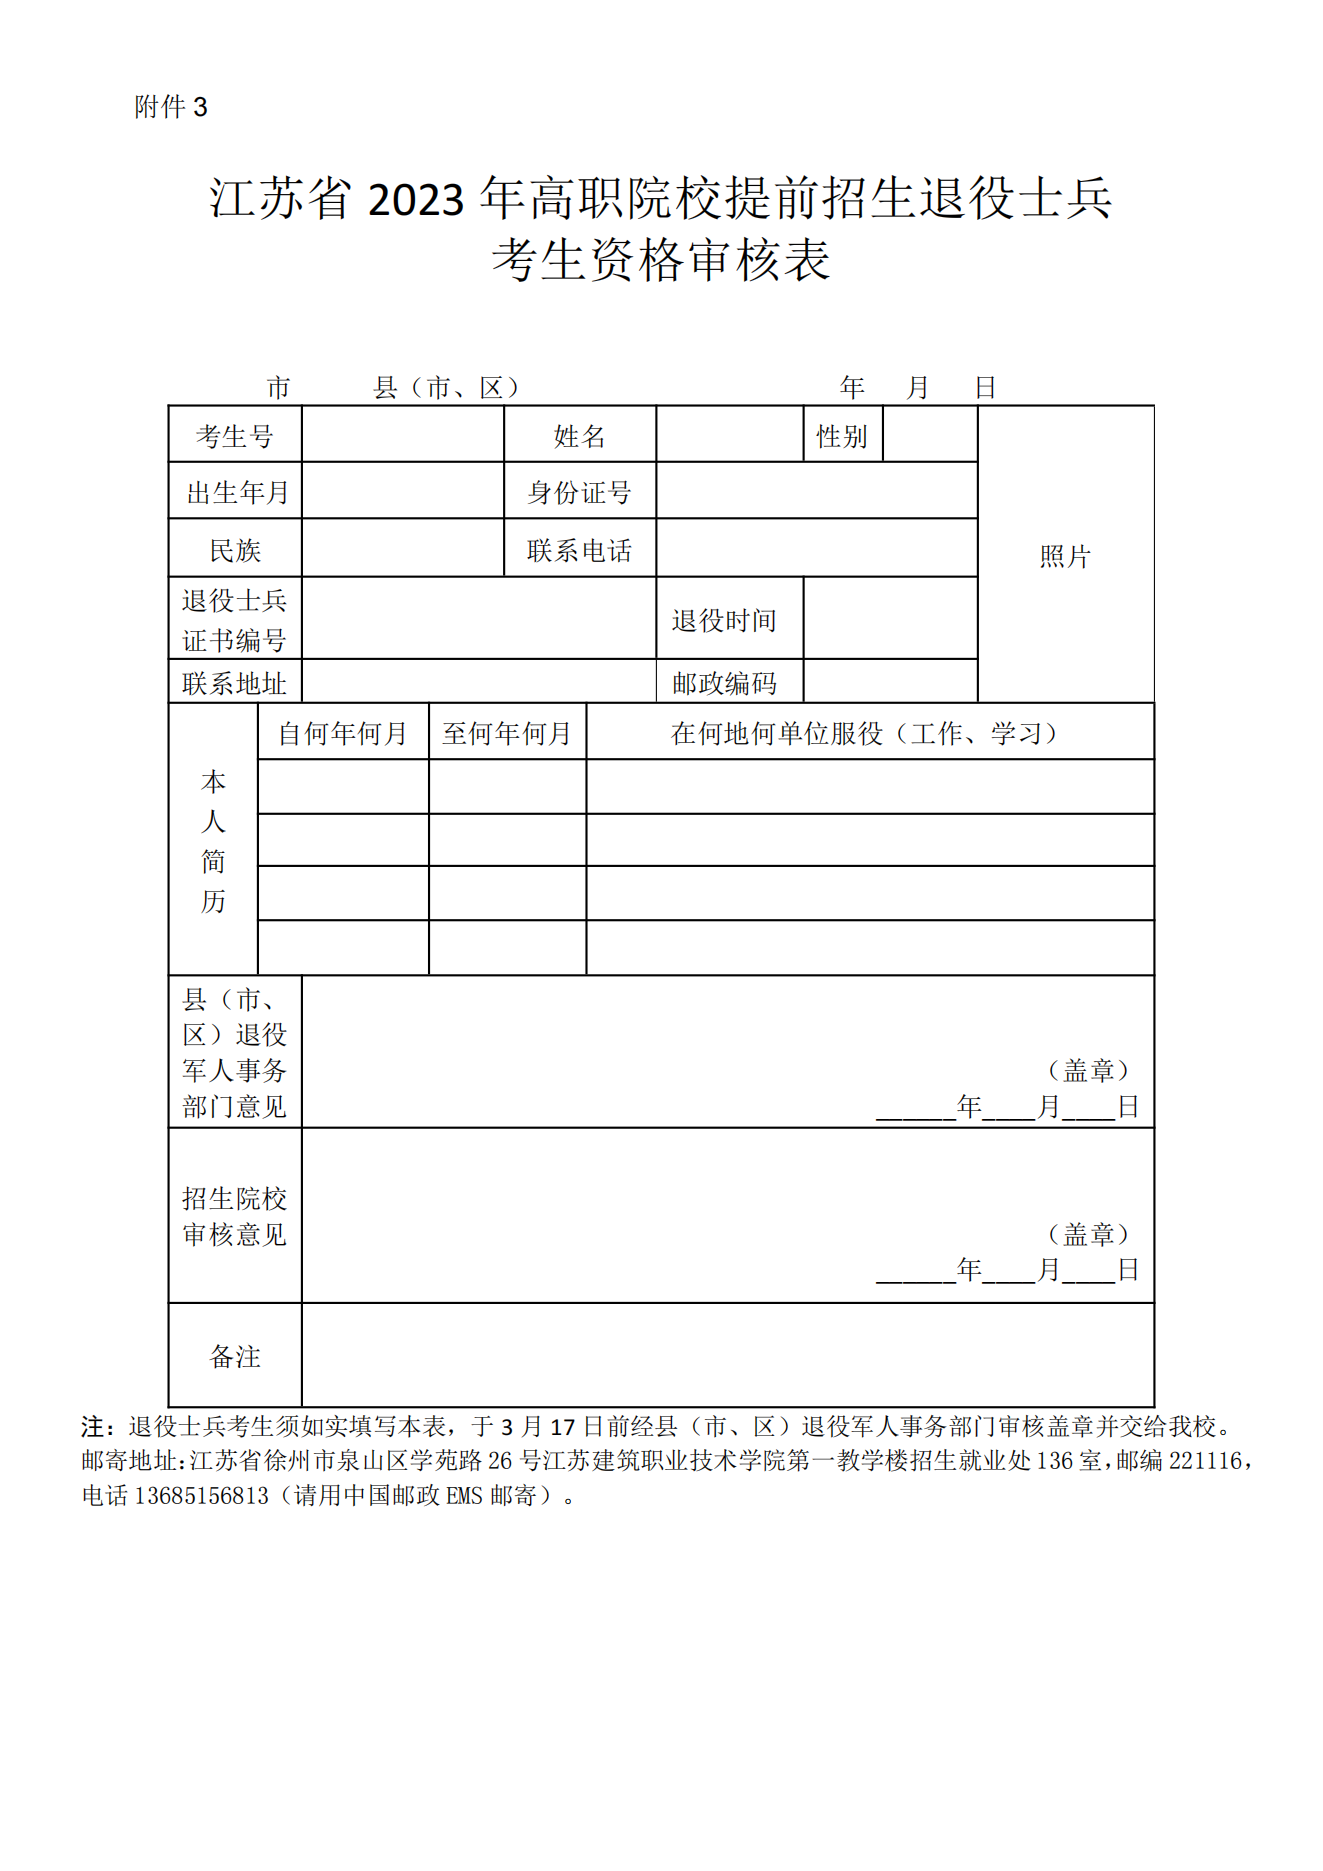 江苏建筑职业技术学院2023年提前招生章程